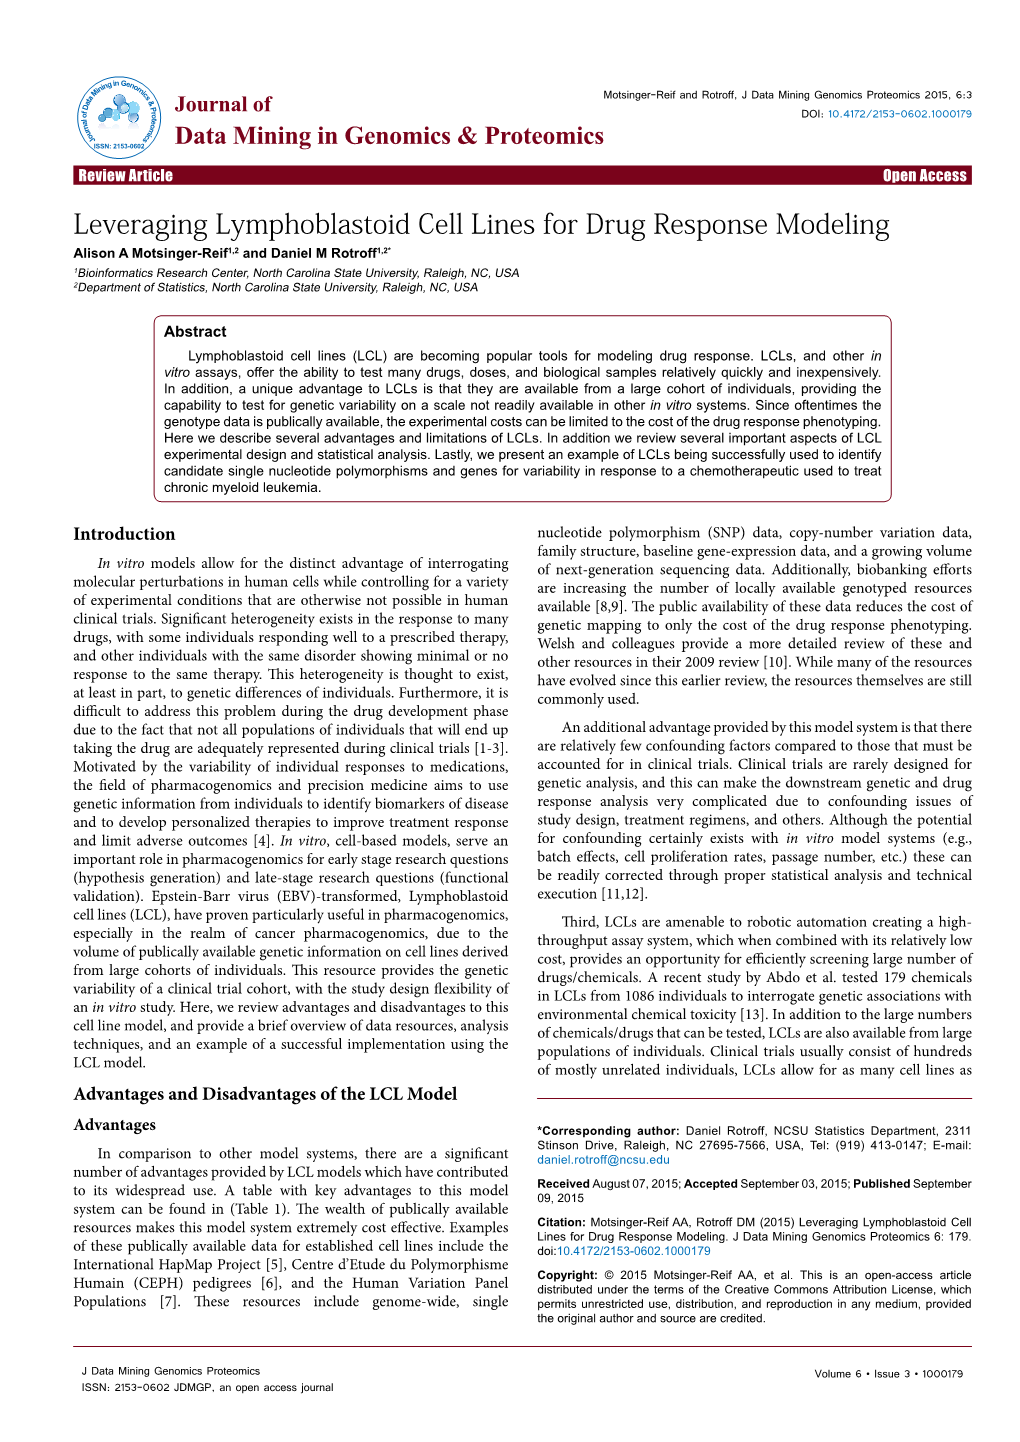 Leveraging Lymphoblastoid Cell Lines for Drug Response Modeling